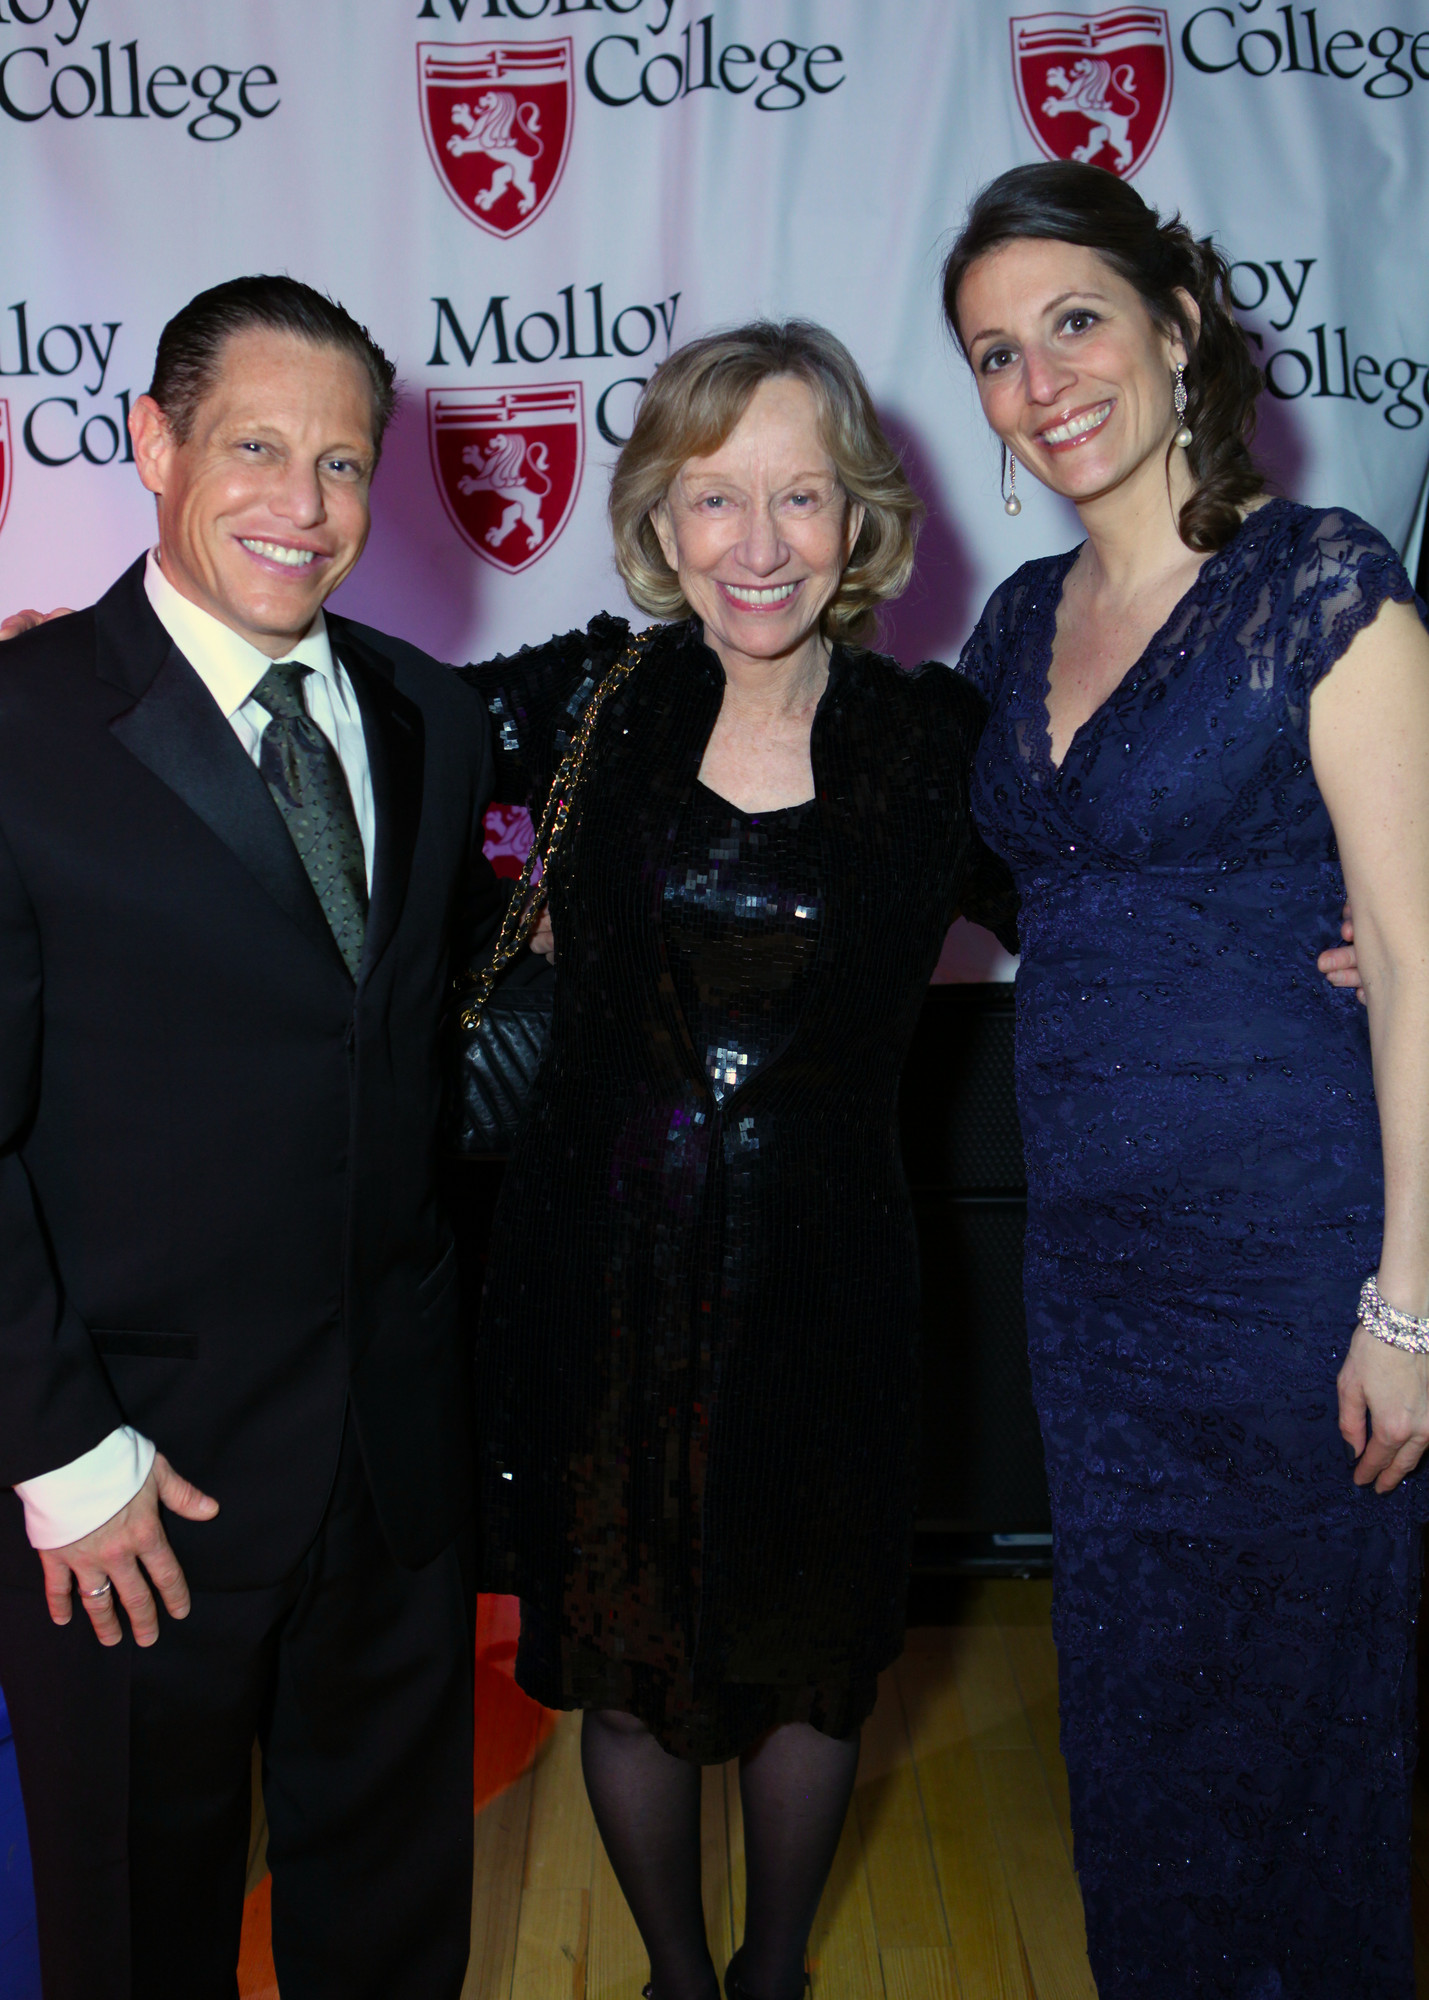 Doris Kearns Goodwin, center, with Gala Co-chairs Tina Rekus and Darren Raymar.